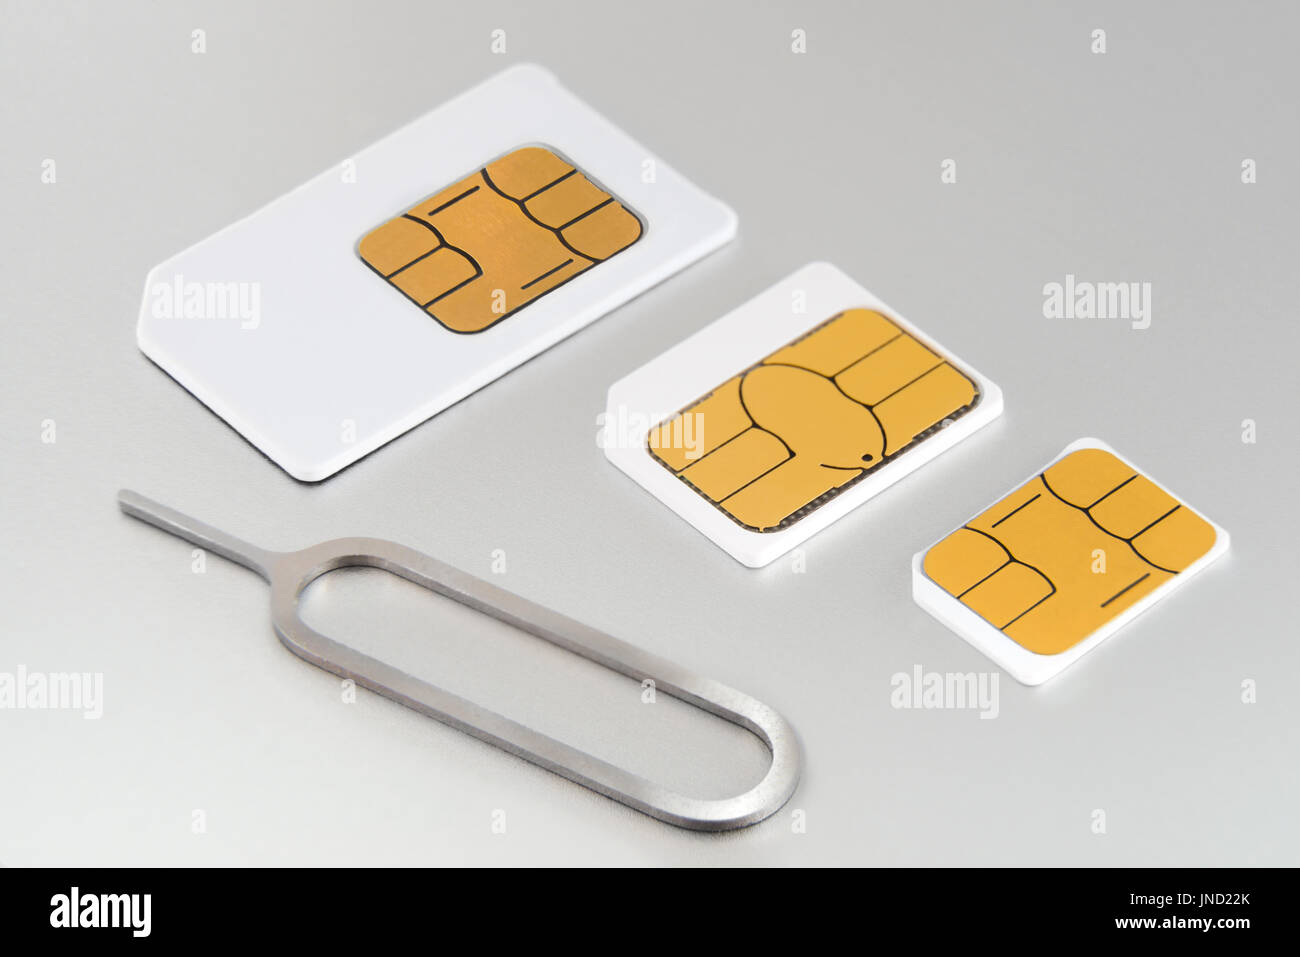 Tre tipi di GSM schede SIM: mini SIM SIM Micro e Nano SIM. Problema di compatibilità su molti smartphone. Modulo di identificazione utente Foto Stock